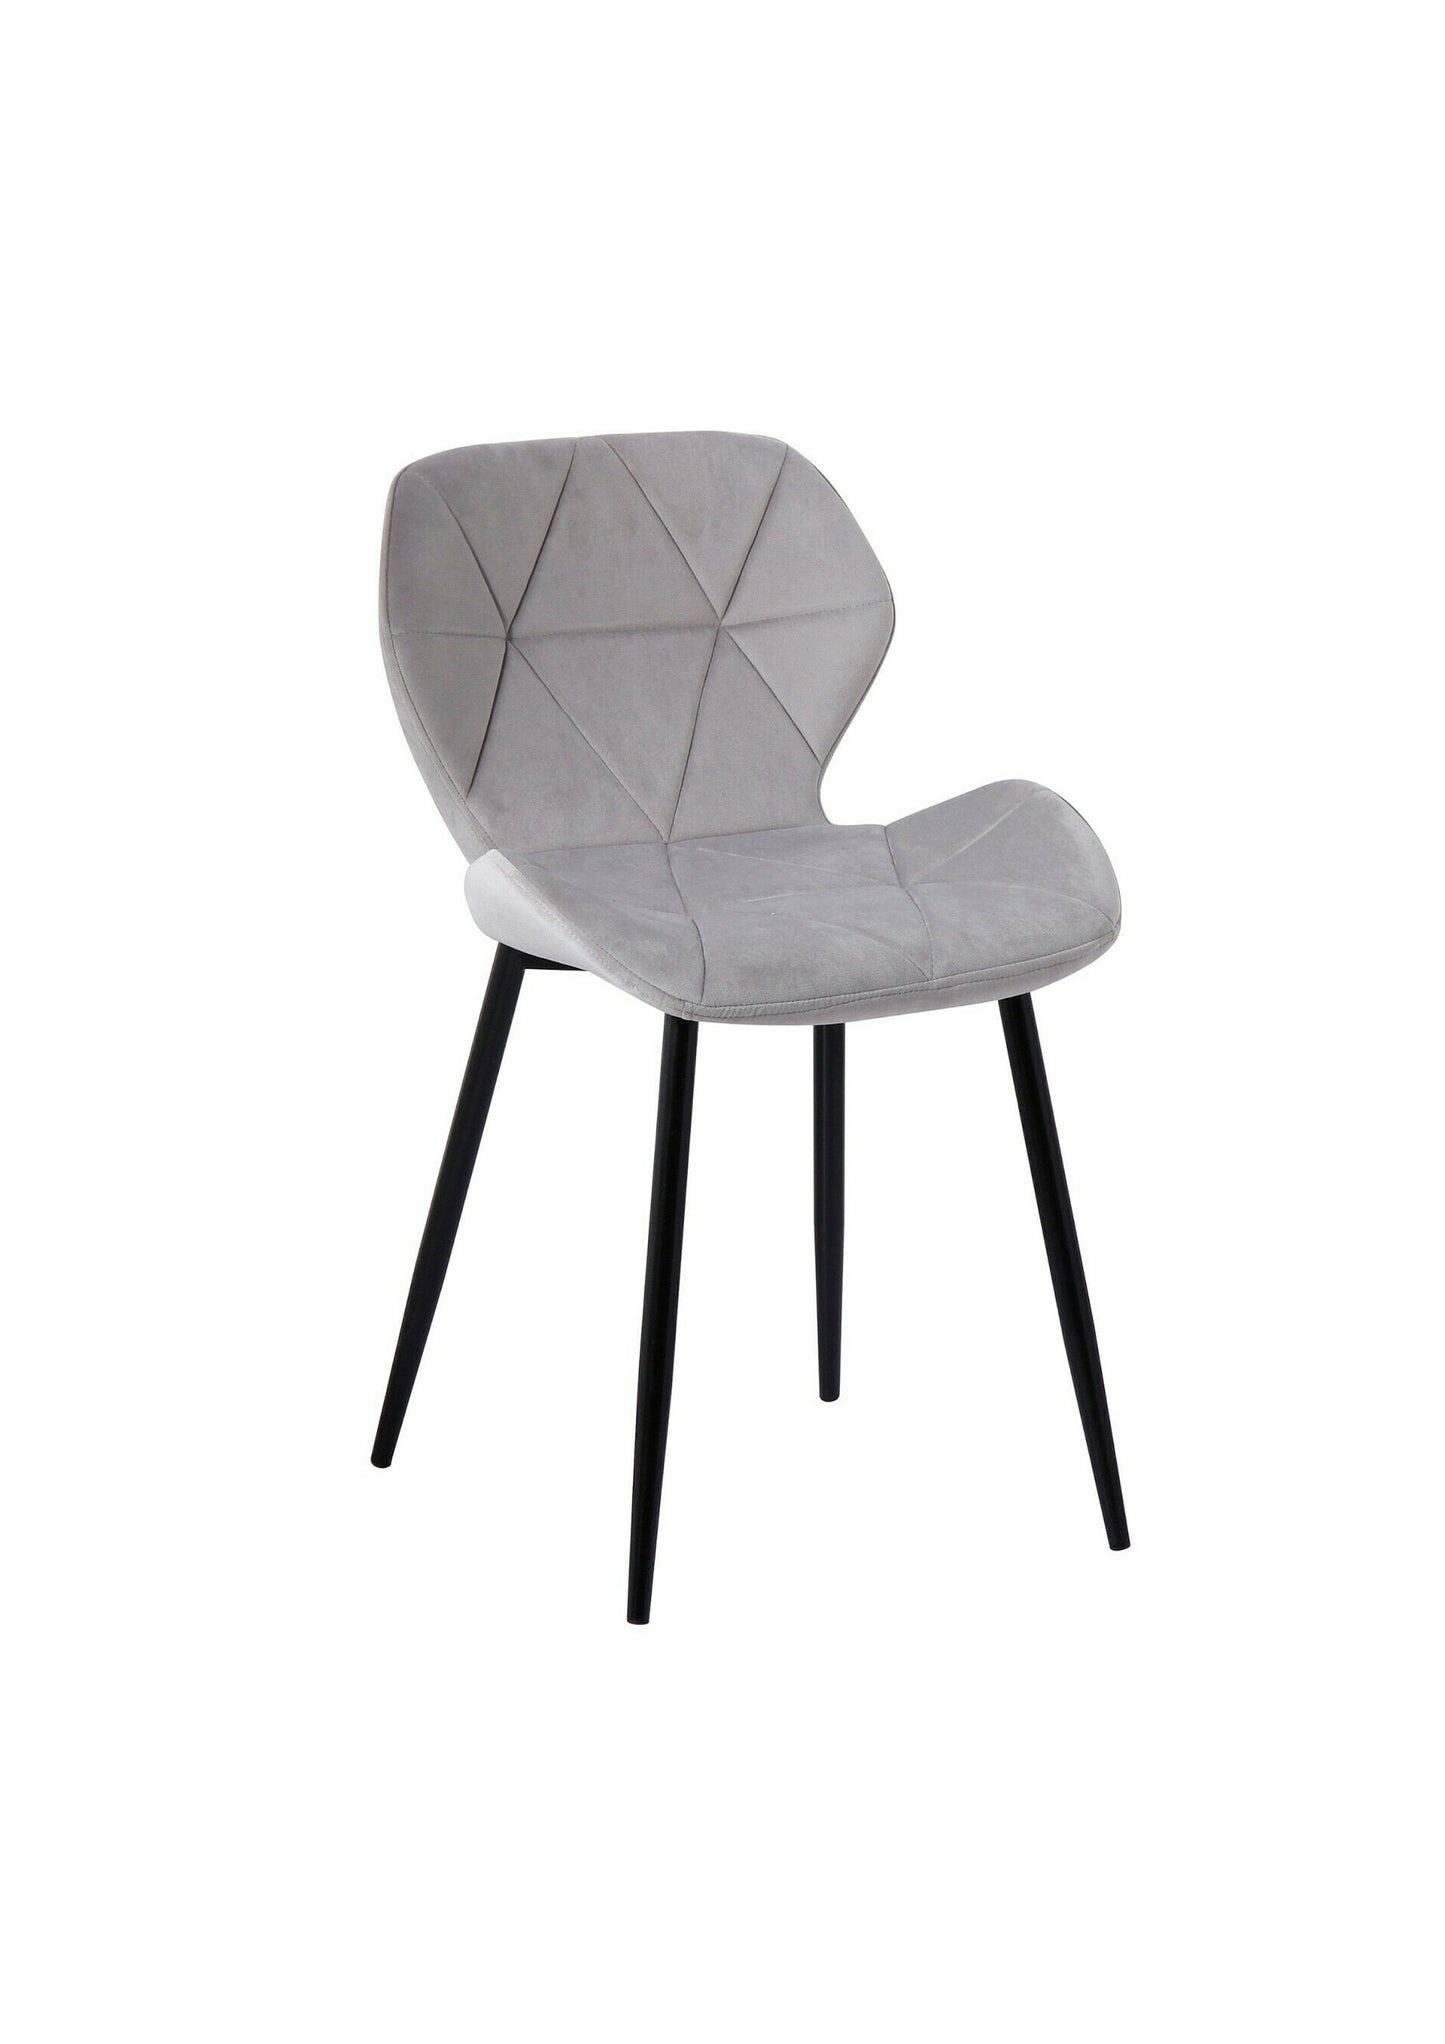 Velvet upholstered Grey Dining chair with black legs - Set of 2